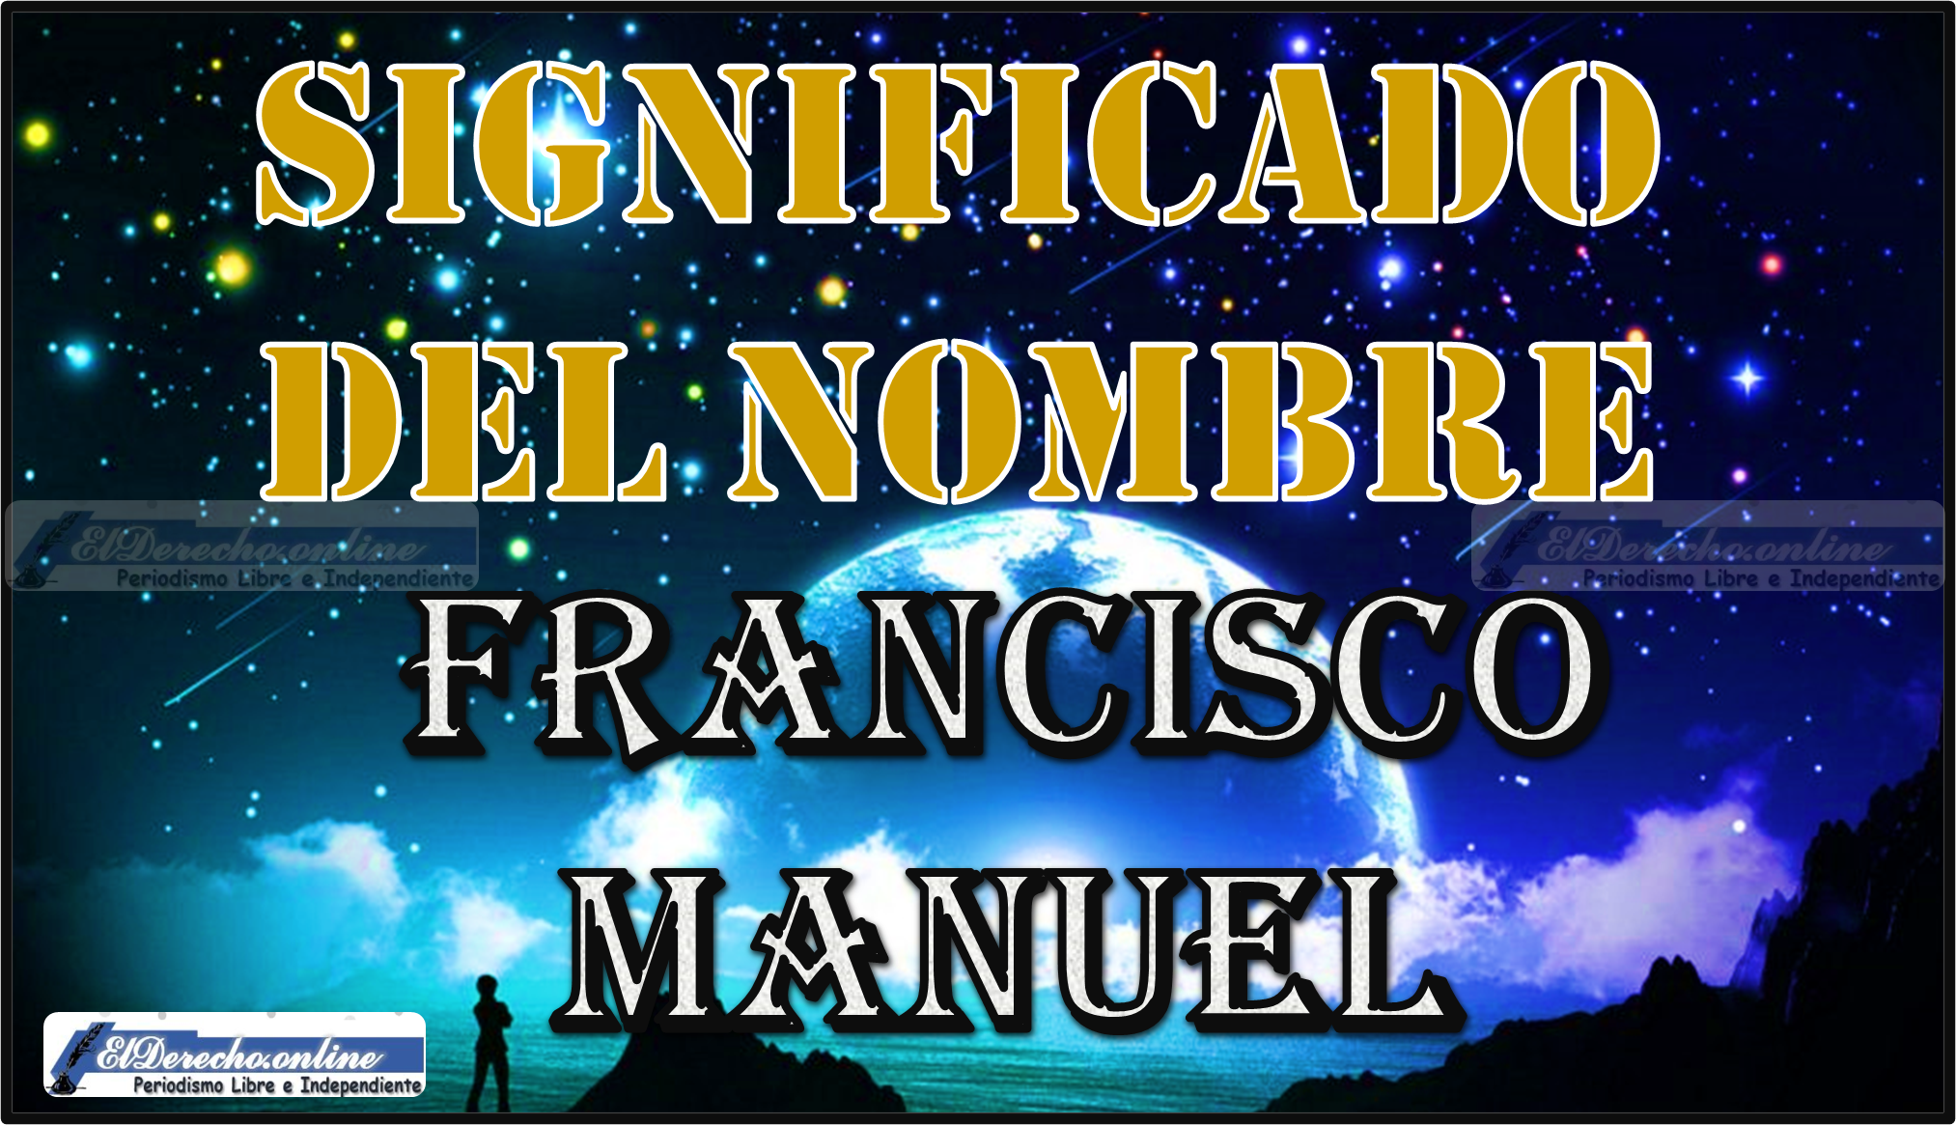 Significado del nombre Francisco Manuel, su origen y más